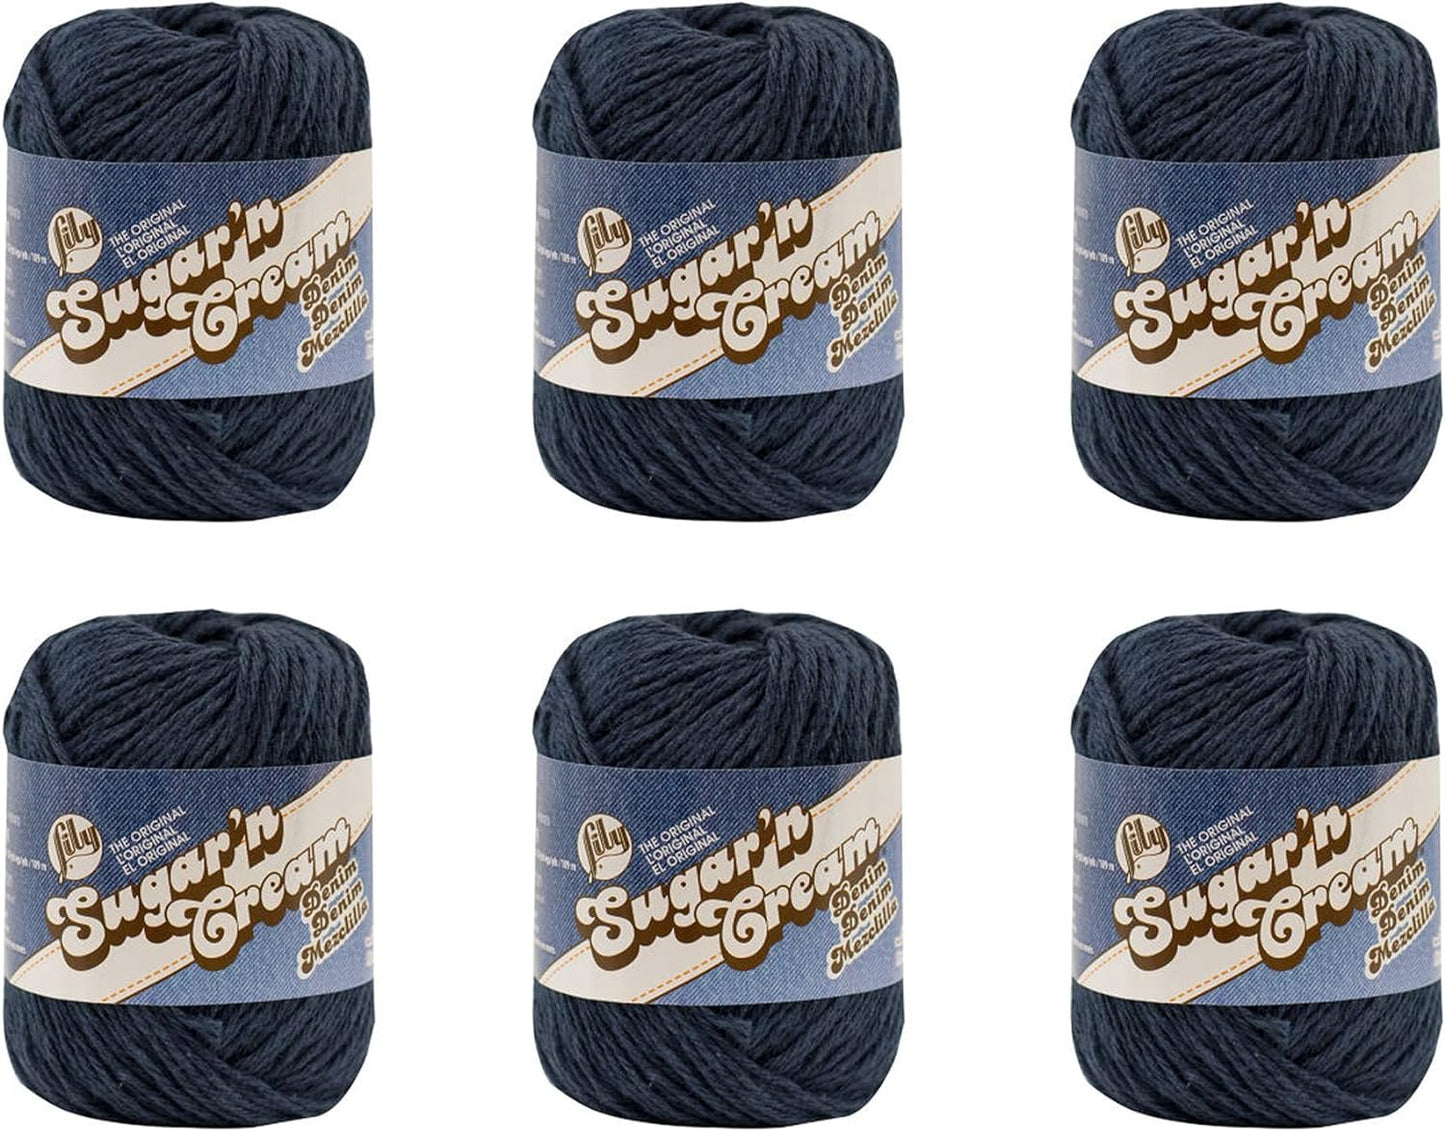 Sugar 'N Cream the Original Solid Yarn, 2.5Oz, Medium 4 Gauge, 100% Cotton - Ecru - Machine Wash & Dry